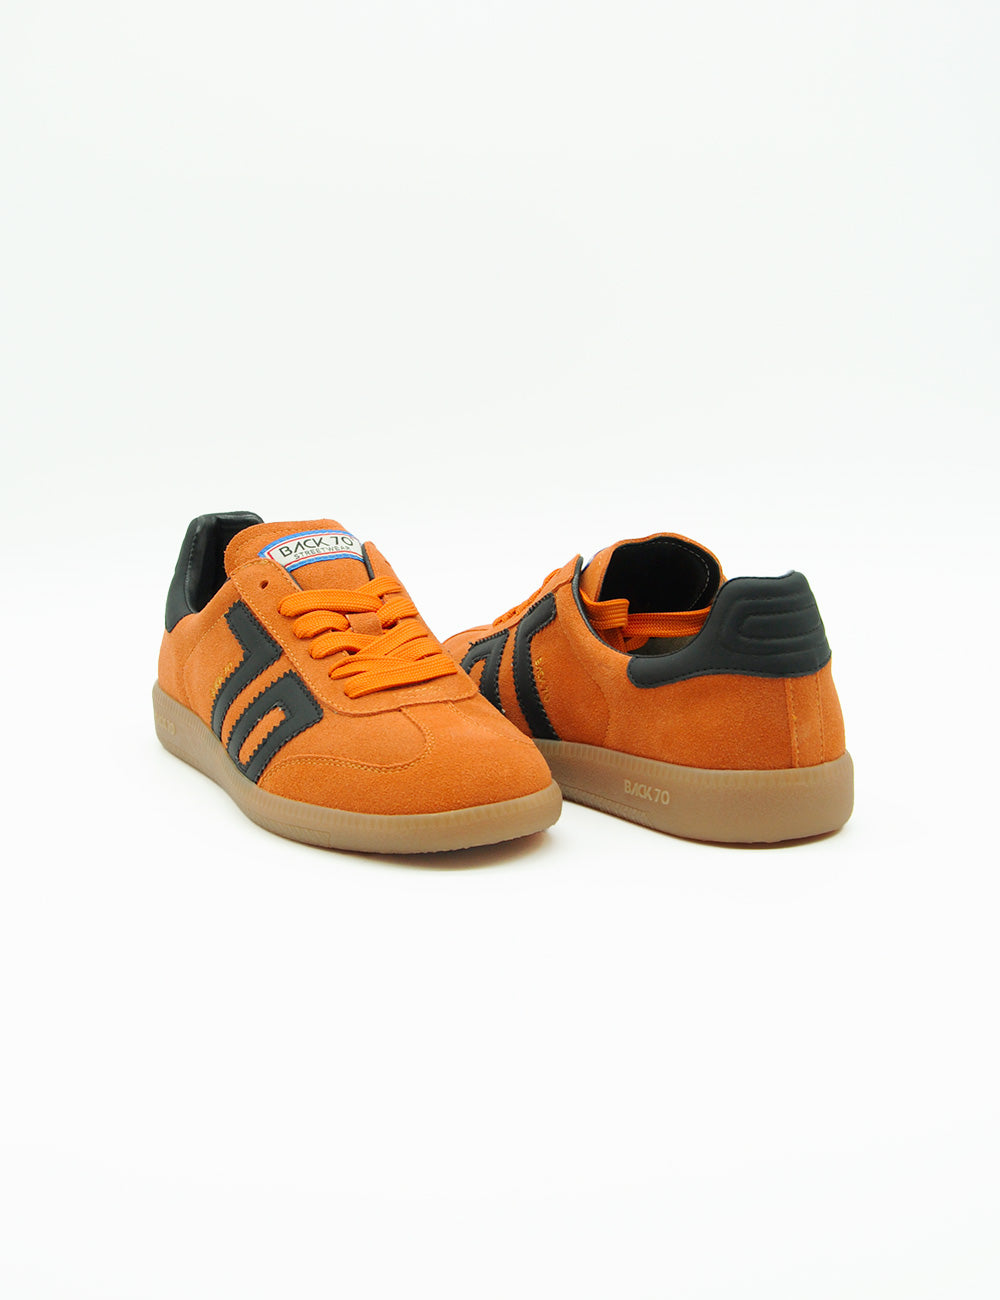 Back 70 Sneakers Lea Orange